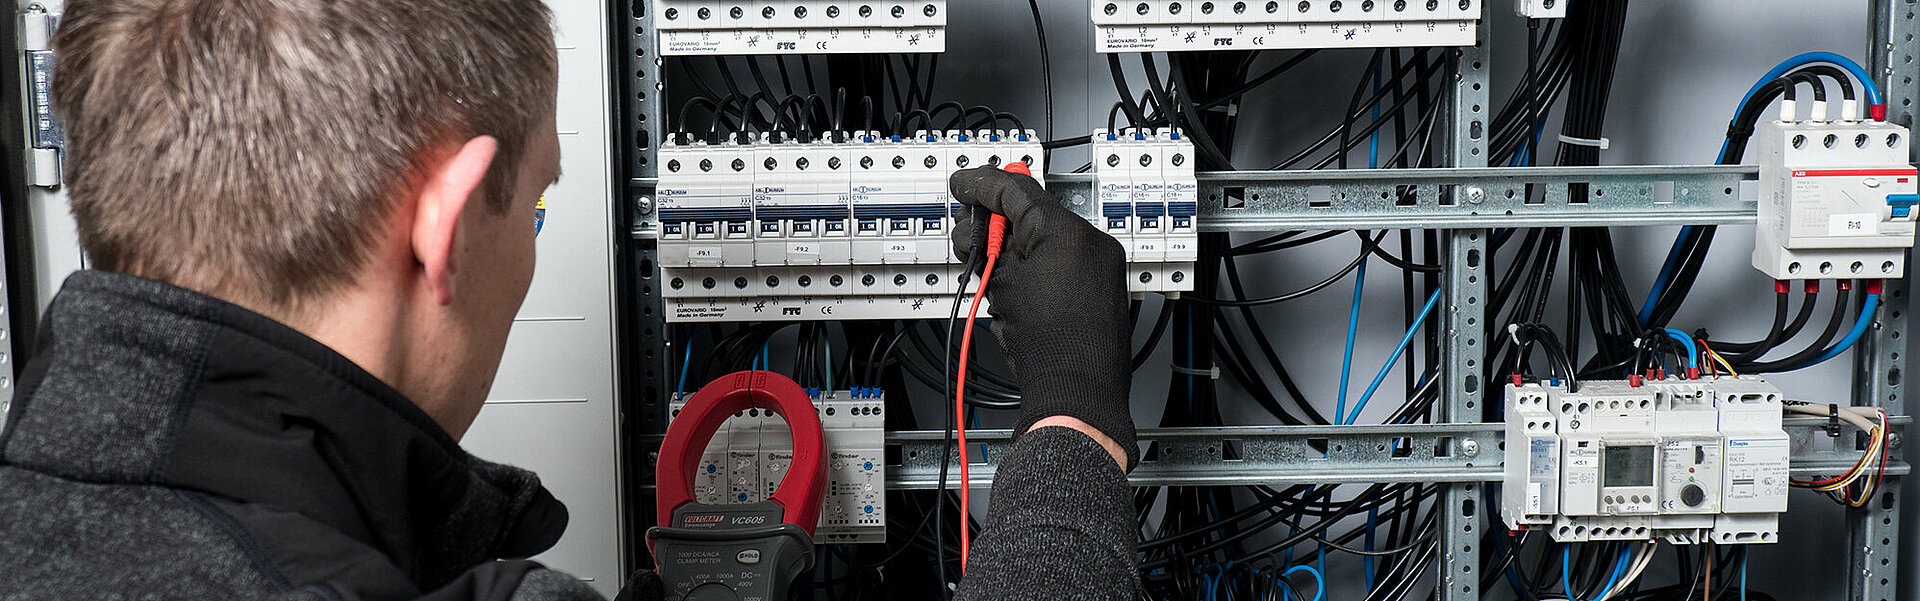 Mitarbeiter prüft Stromkabel in einem Schaltschrank